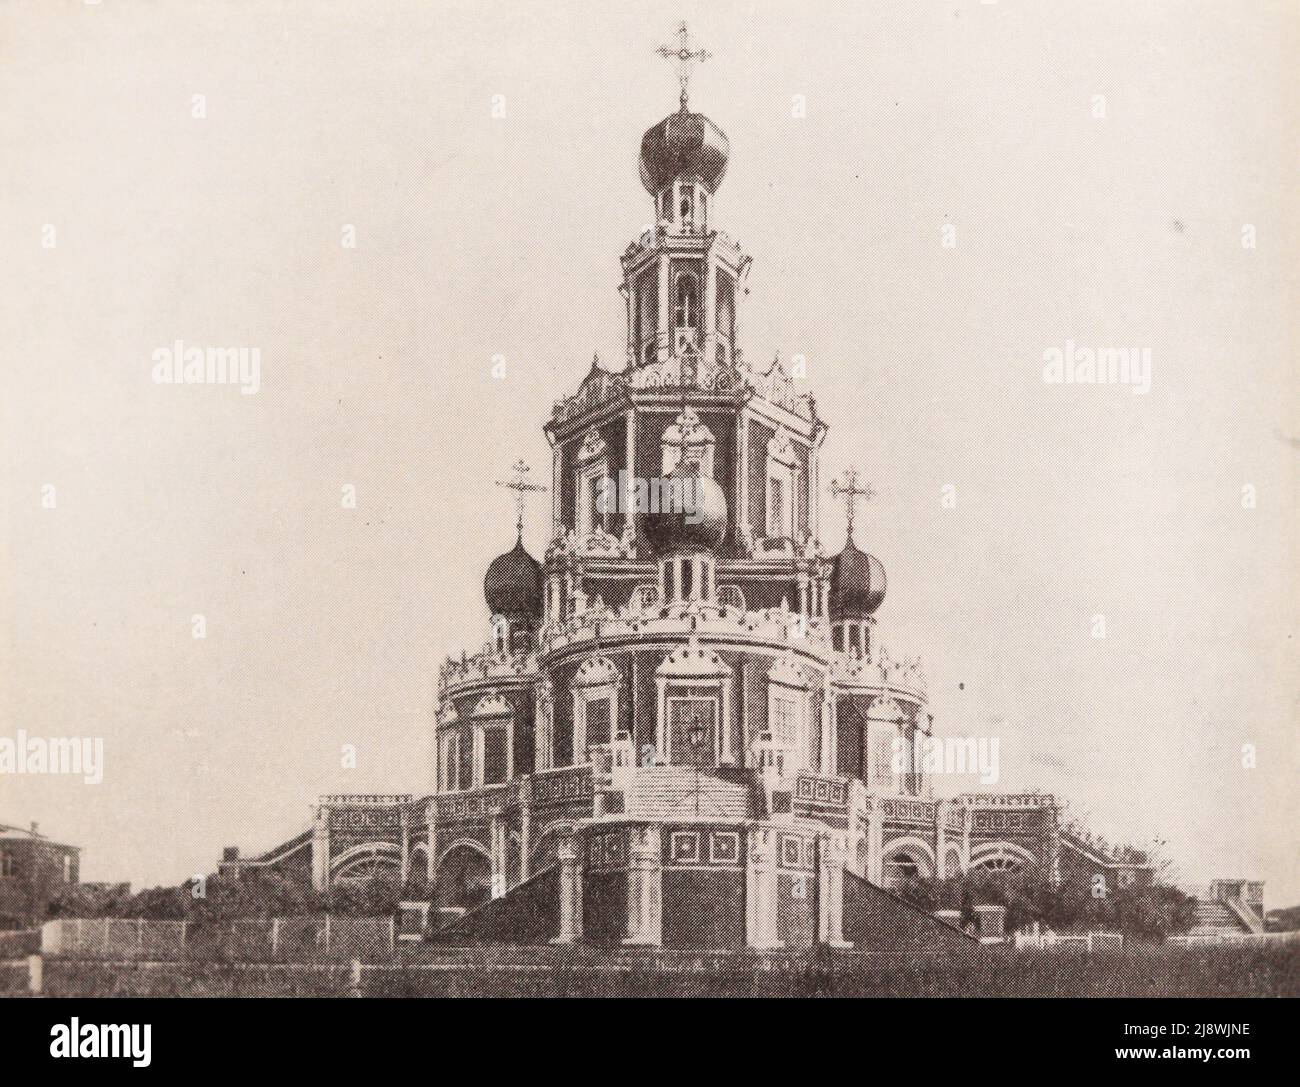 La Iglesia de la intercesión en el pueblo de Filia cerca de Moscú. Foto de finales del siglo 19th. Foto de stock